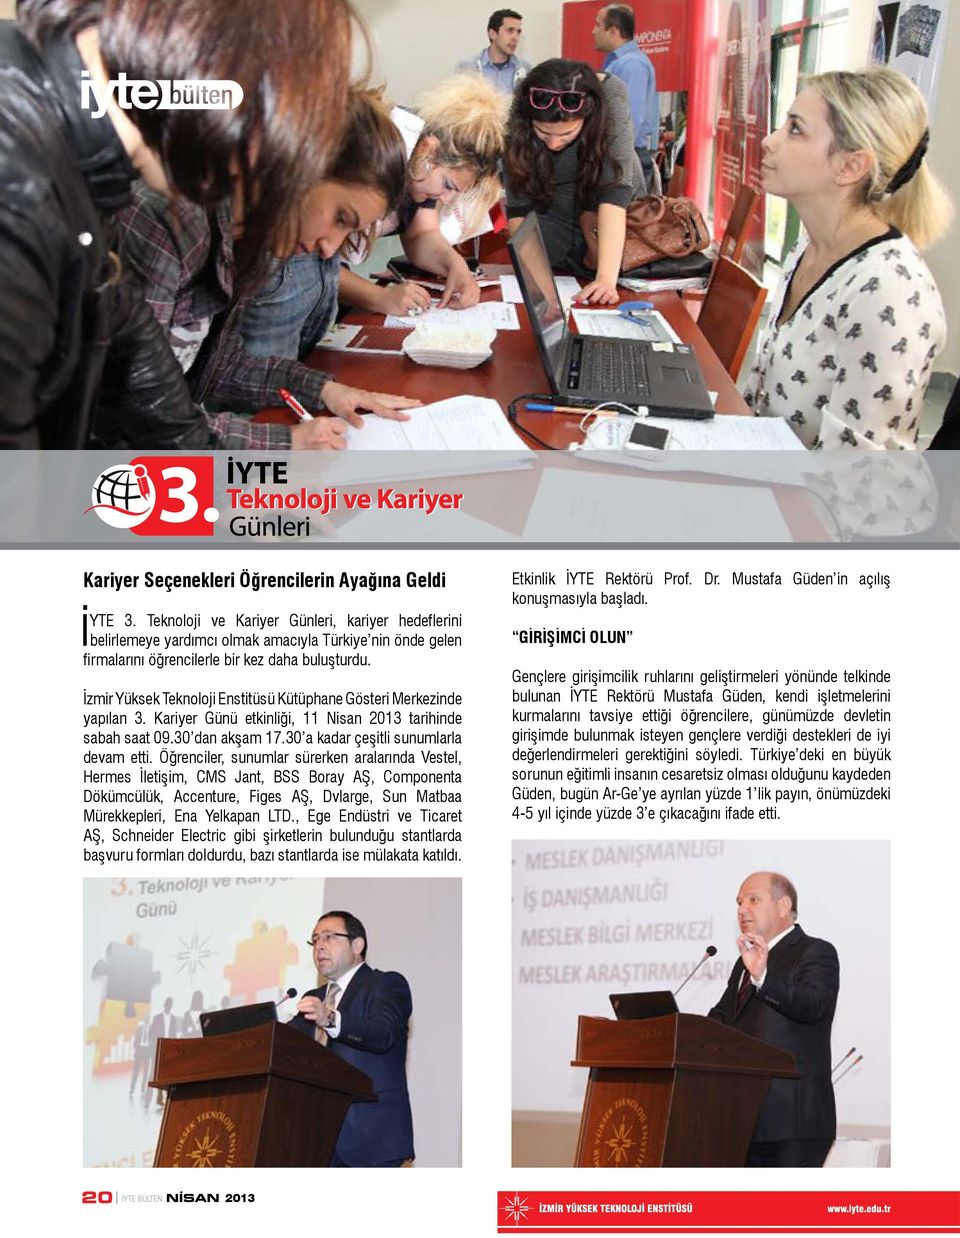 İzmir Yüksek Teknoloji Enstitüsü Kütüphane Gösteri Merkezinde yapılan 3. Kariyer Günü etkinliği, 11 Nisan 2013 tarihinde sabah saat 09.30 dan akşam 17.30 a kadar çeşitli sunumlarla devam etti.